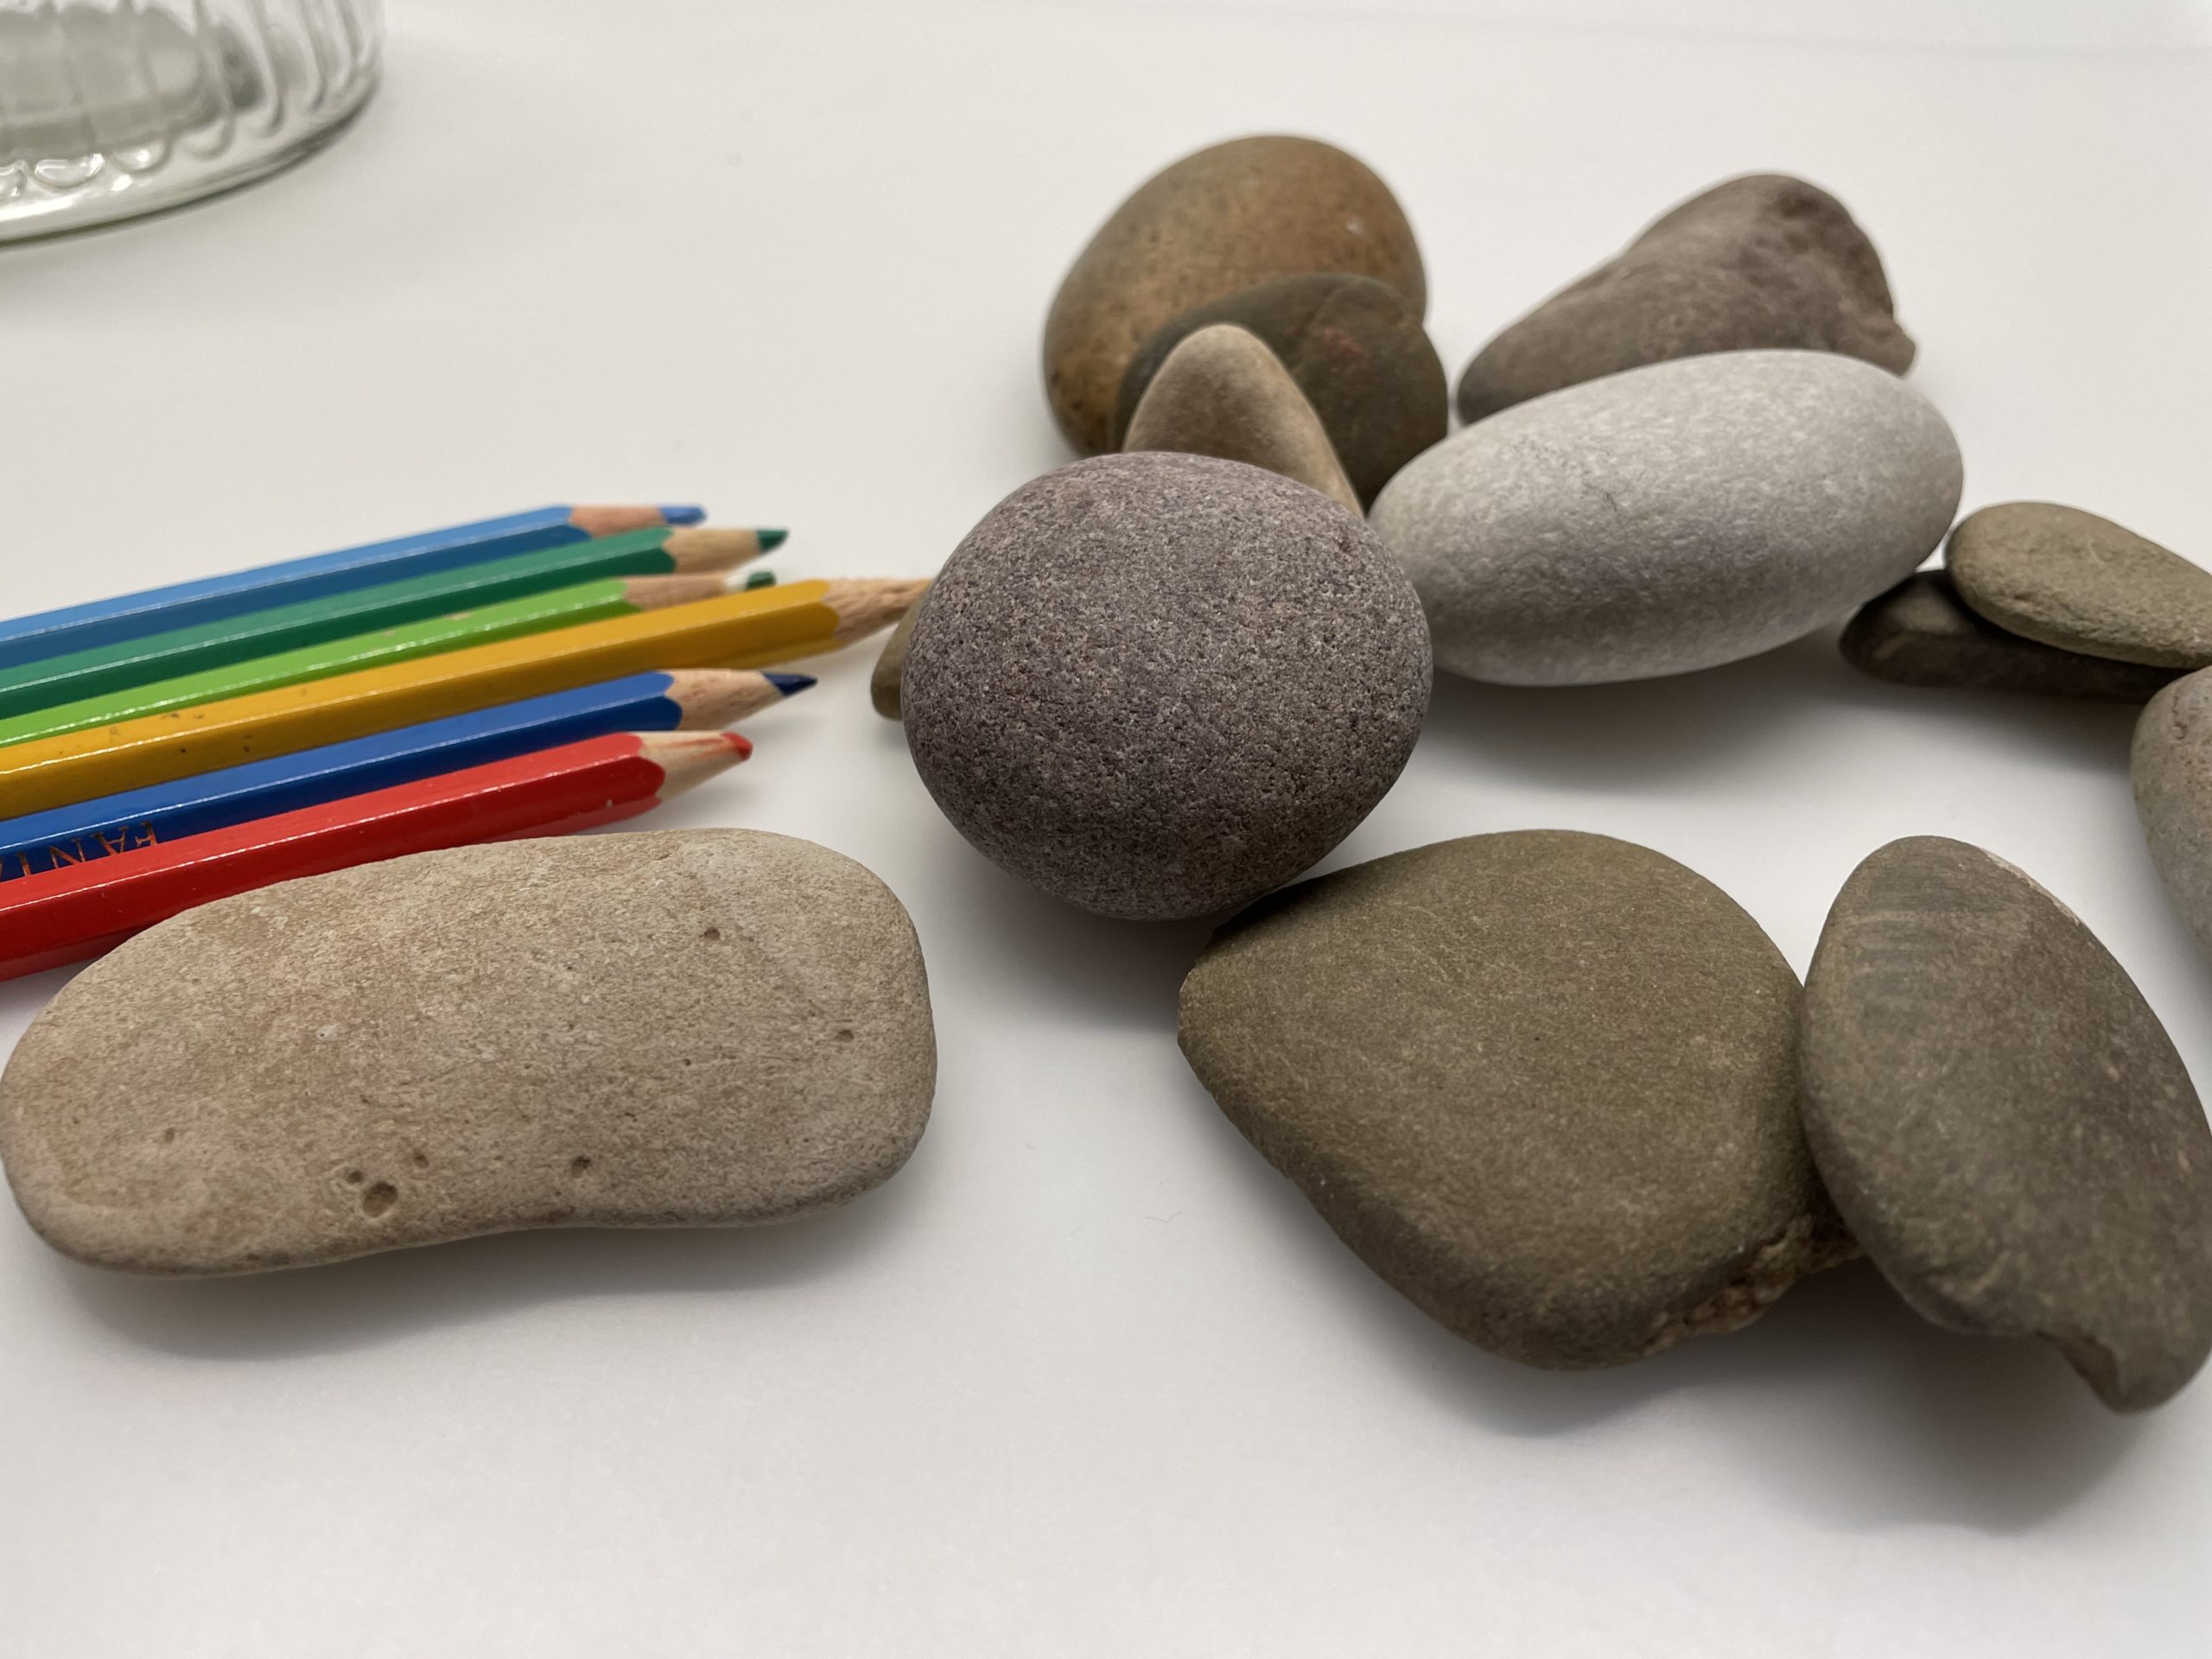 Bild zum Schritt 4 für das Bastel- und DIY-Abenteuer für Kinder: 'Mit Buntstiften könnt ihr auf die Steine schreiben.'